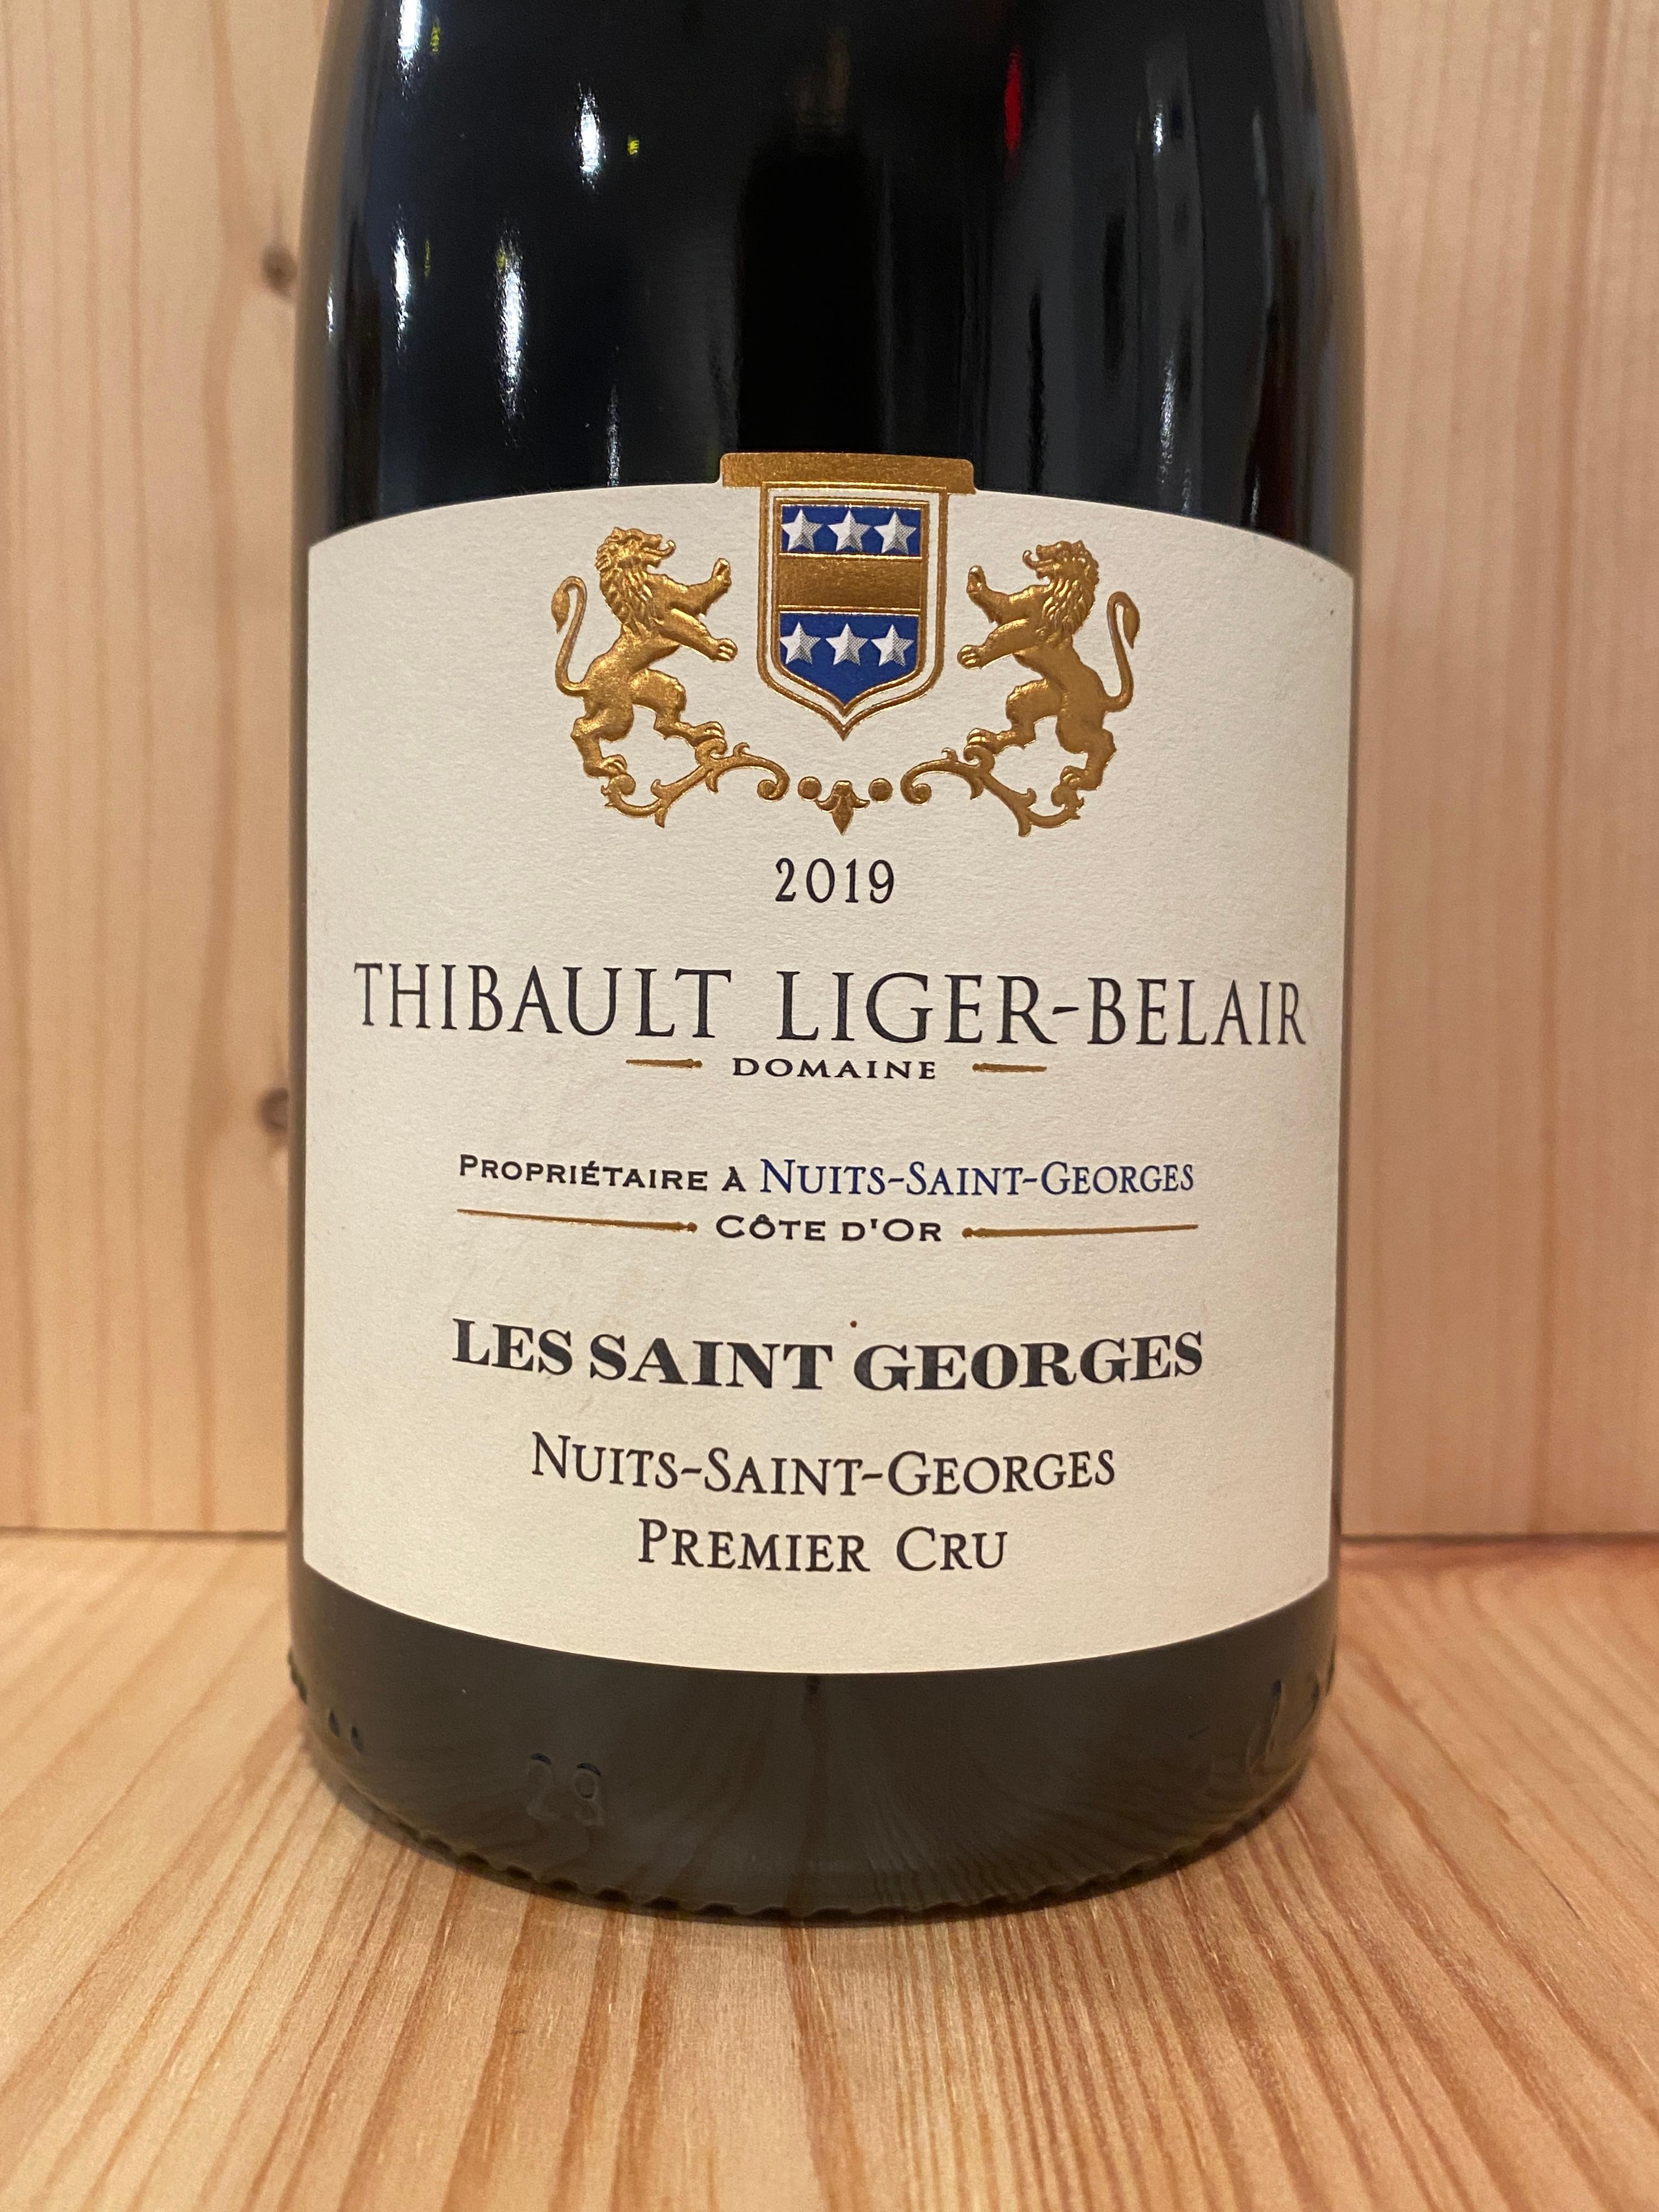 Thibault Liger-Belair Nuits-Saint-George 1er Cru Les Saints Georges 2019: Burgundy, France